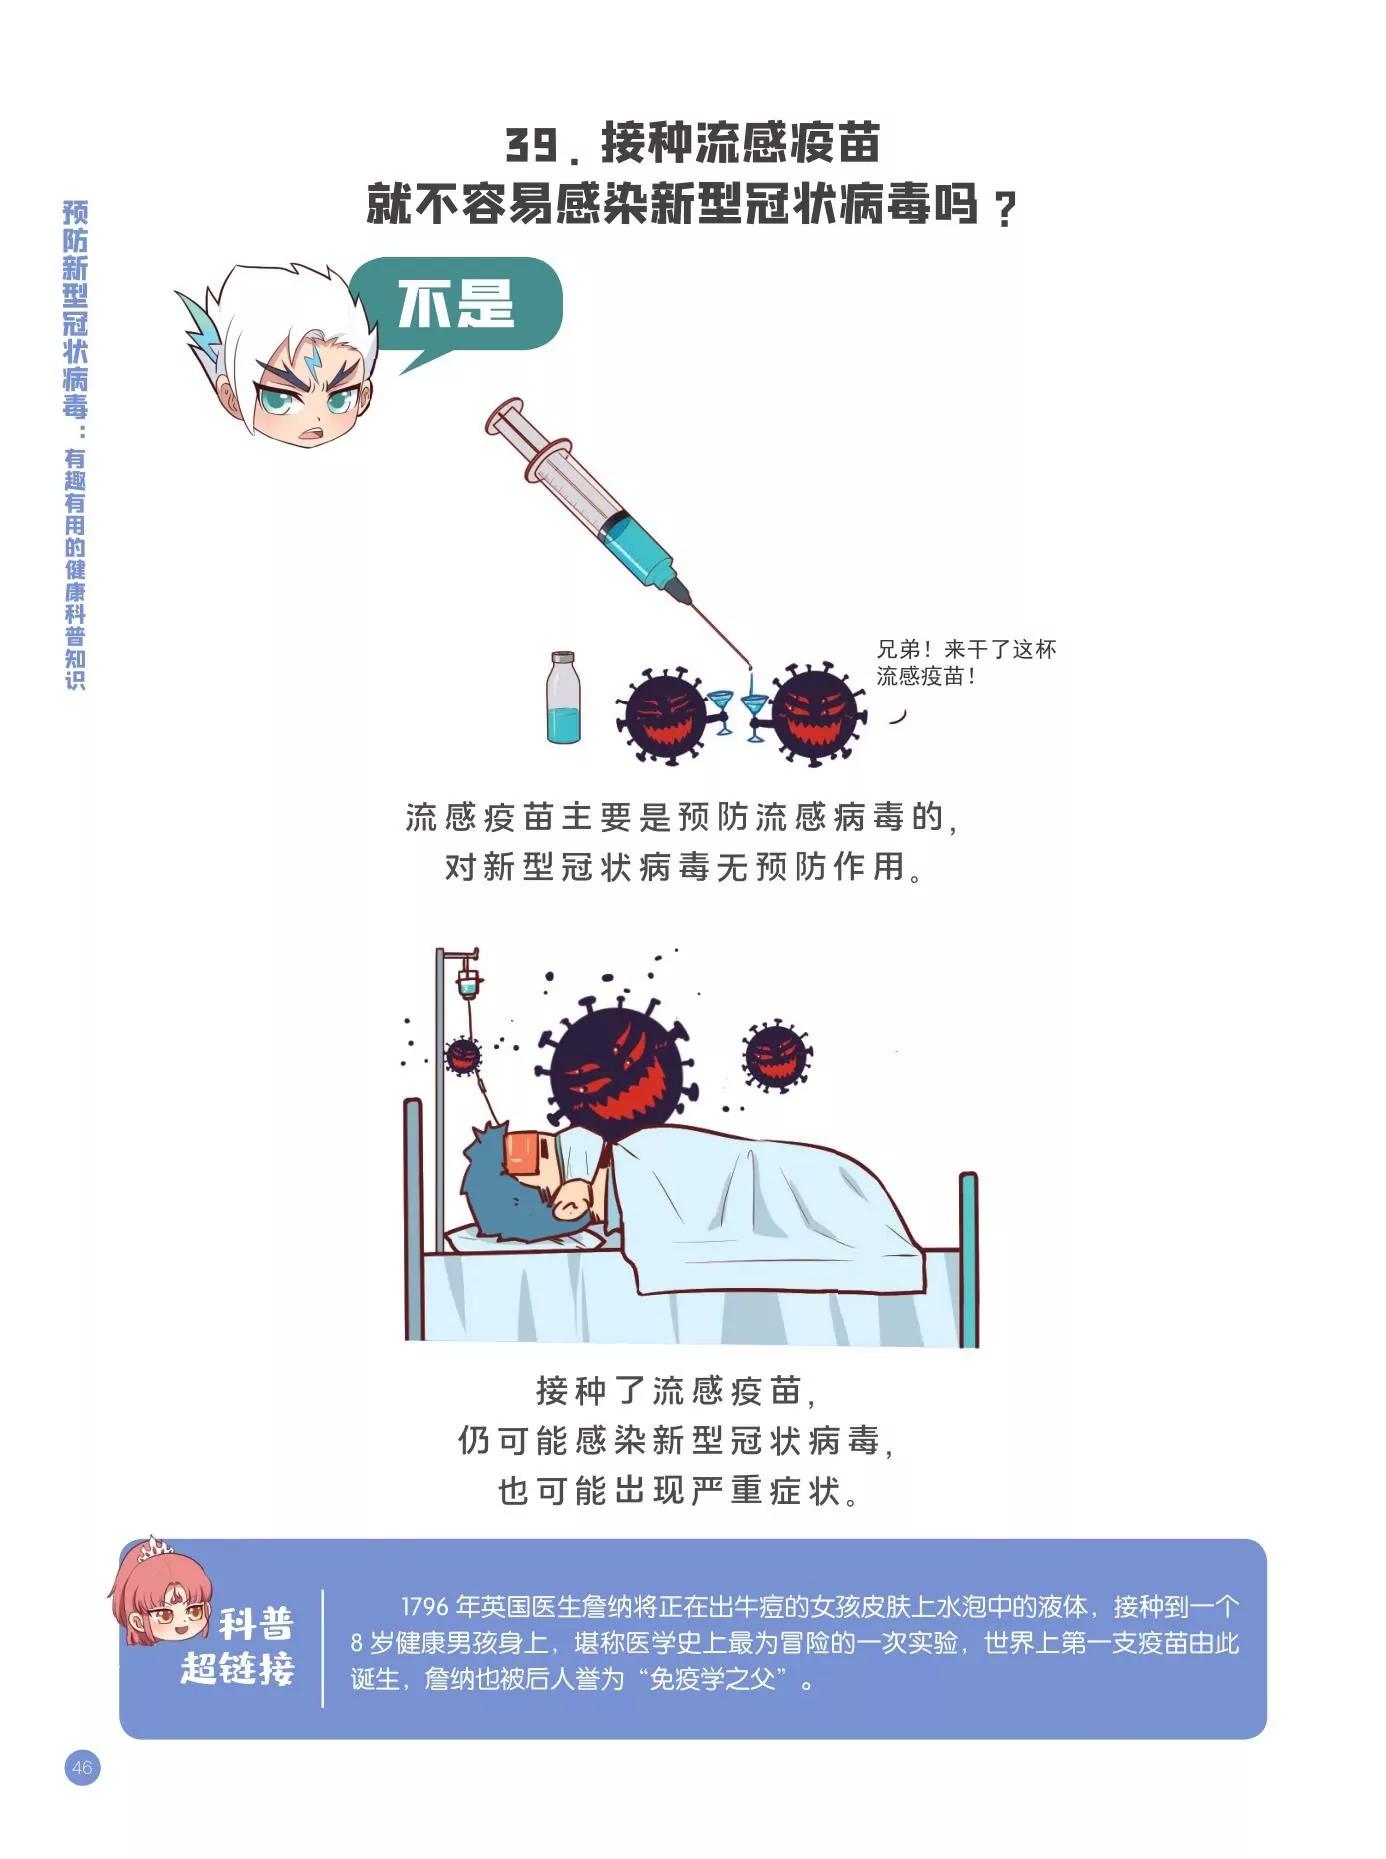 預防新型冠狀病毒 - 認識誤區篇 - 3